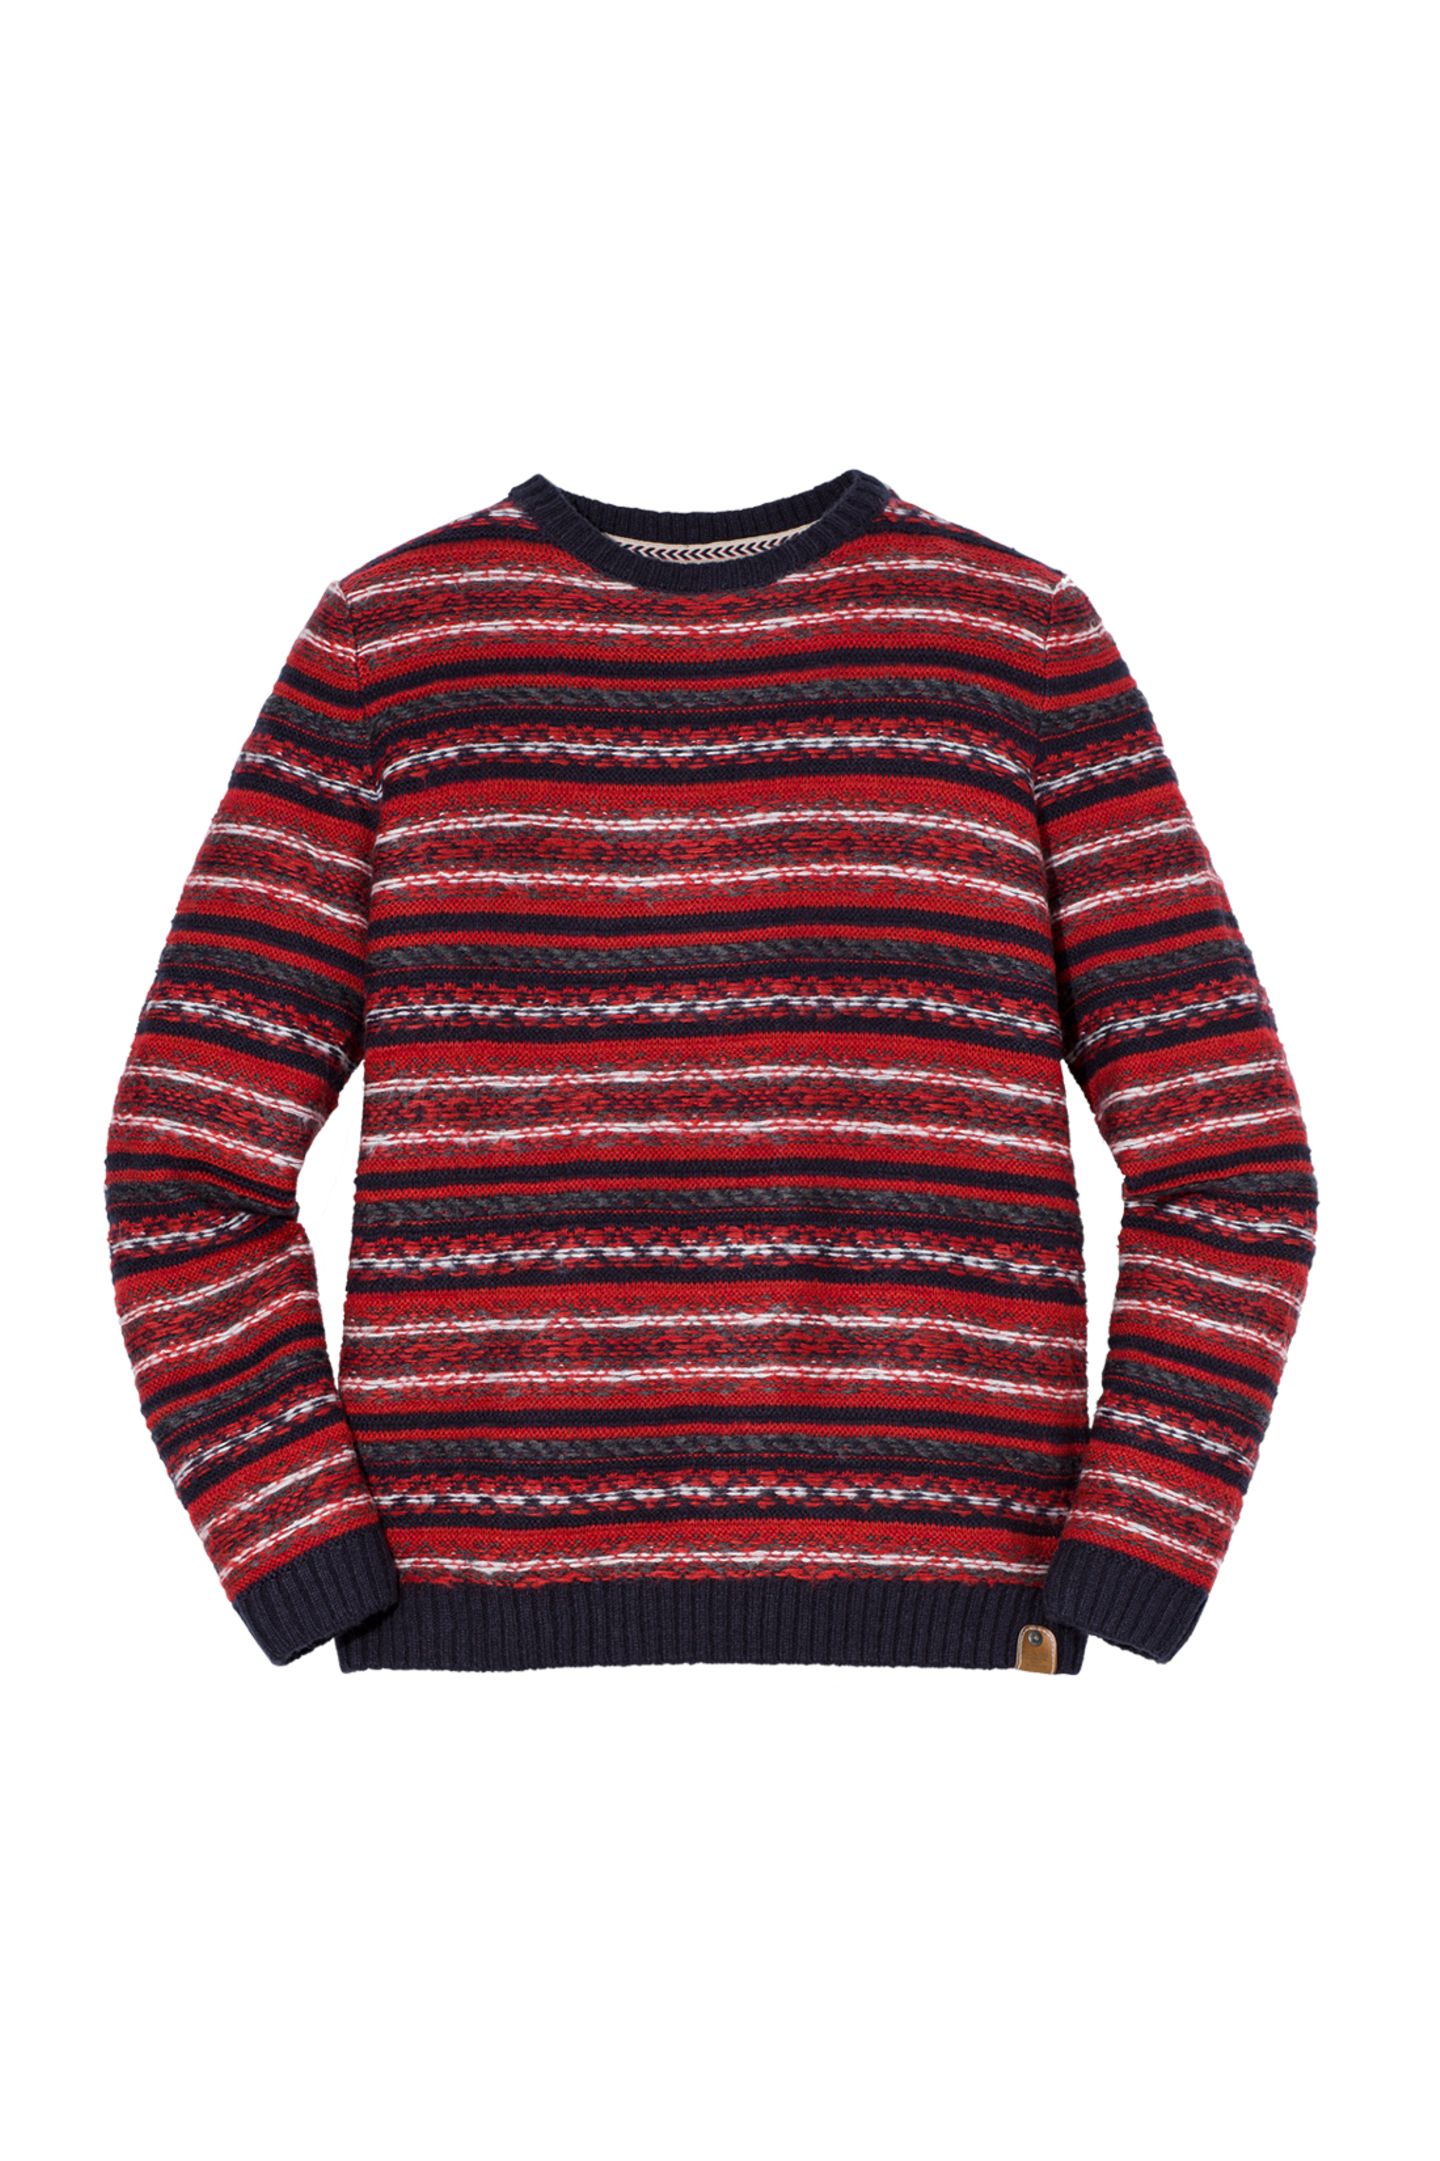 Auf Streifzug durch die Winterwelt im Pullover von Tom Tailor, ca. 60 Euro